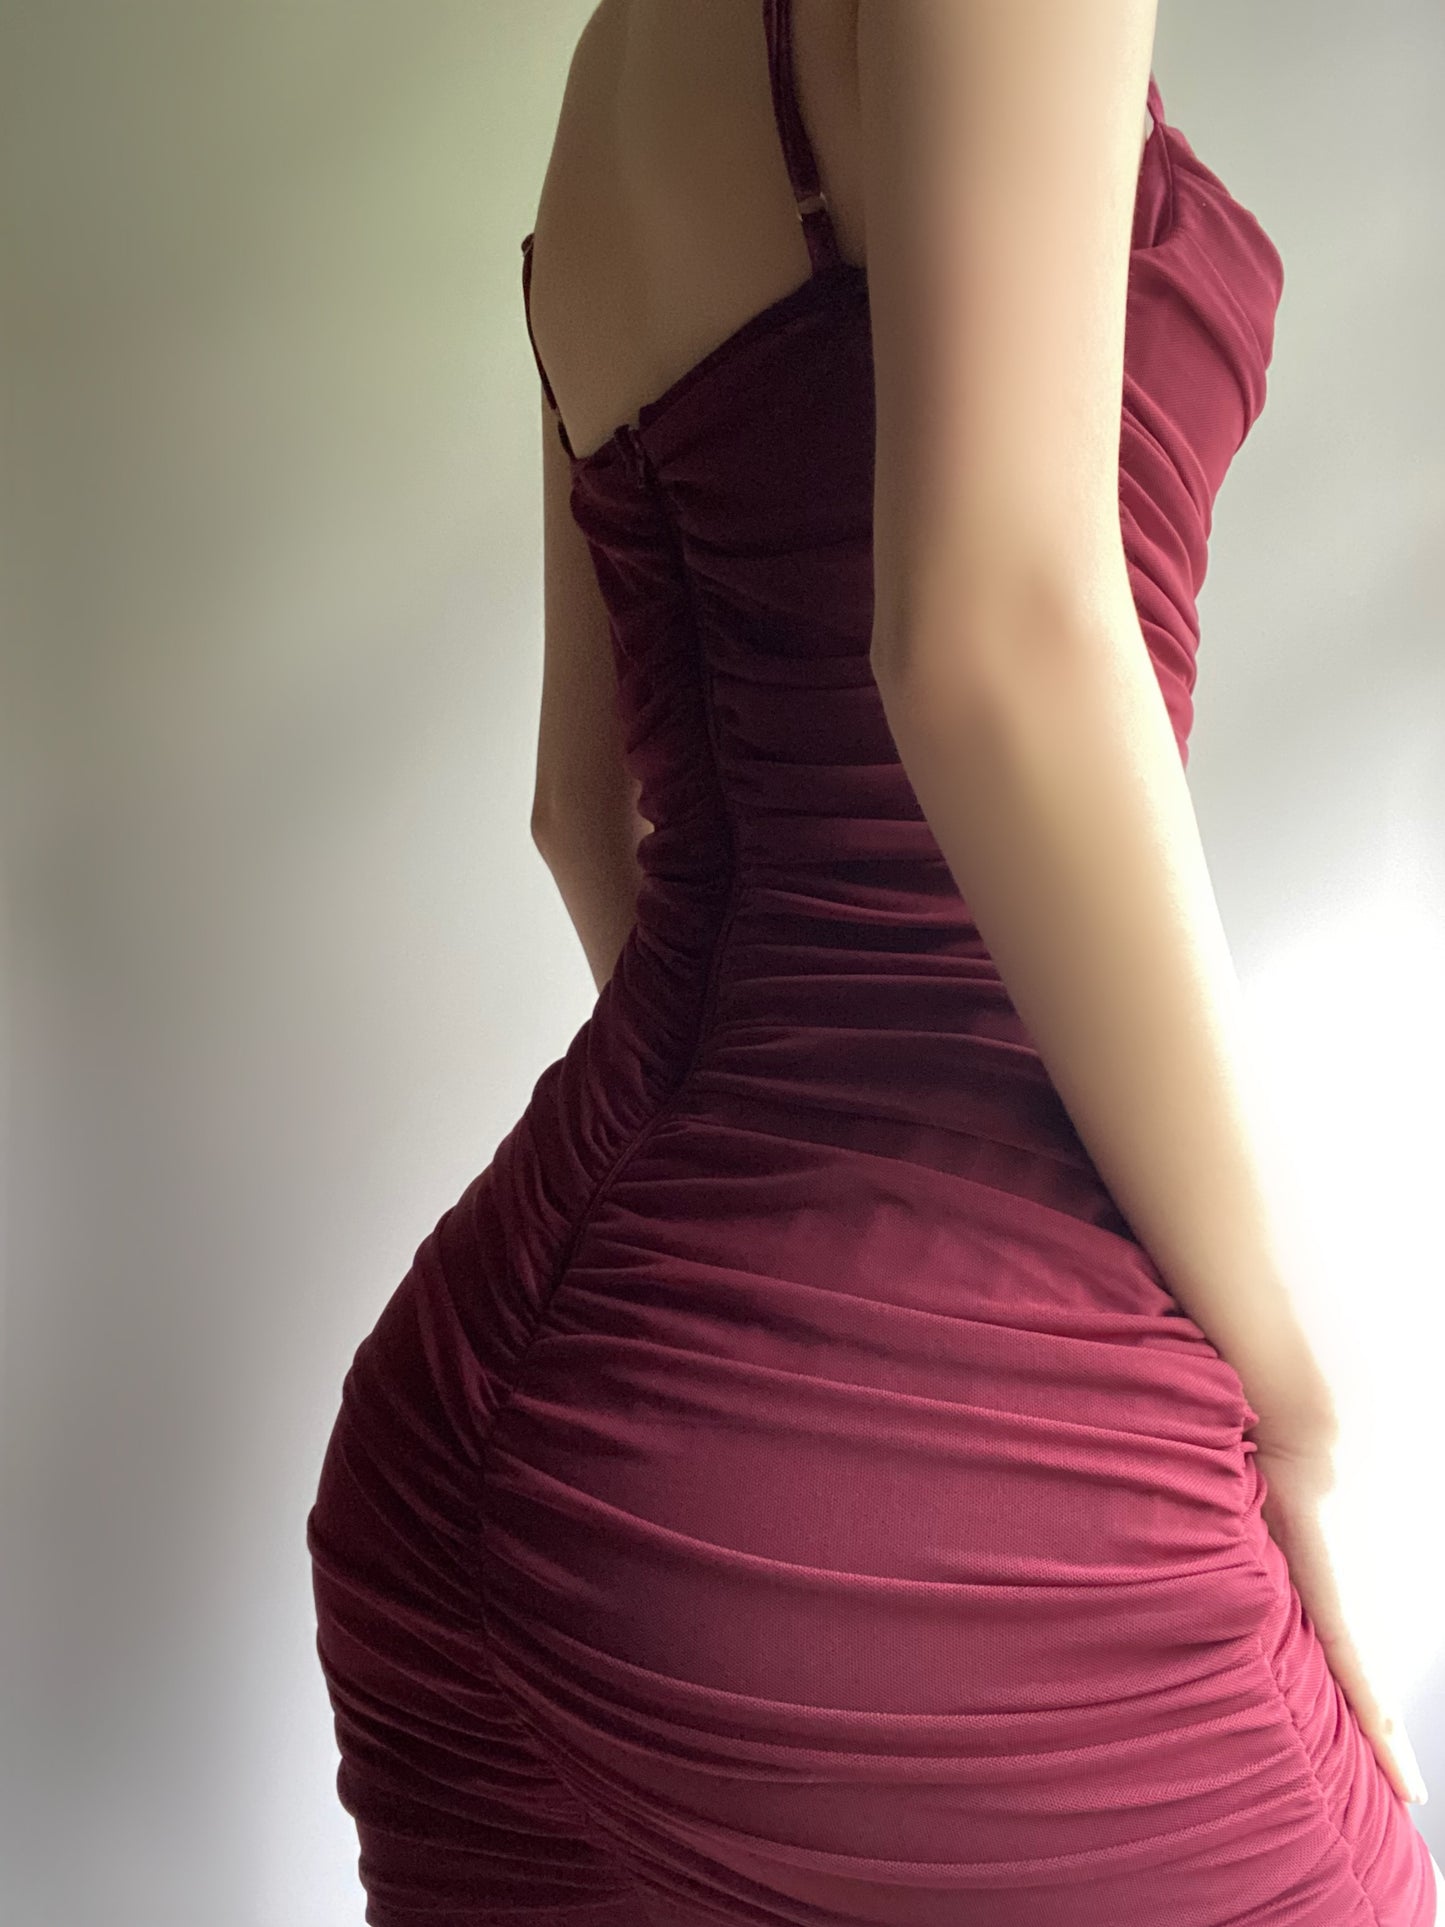 Violetta Mesh Mini Dress